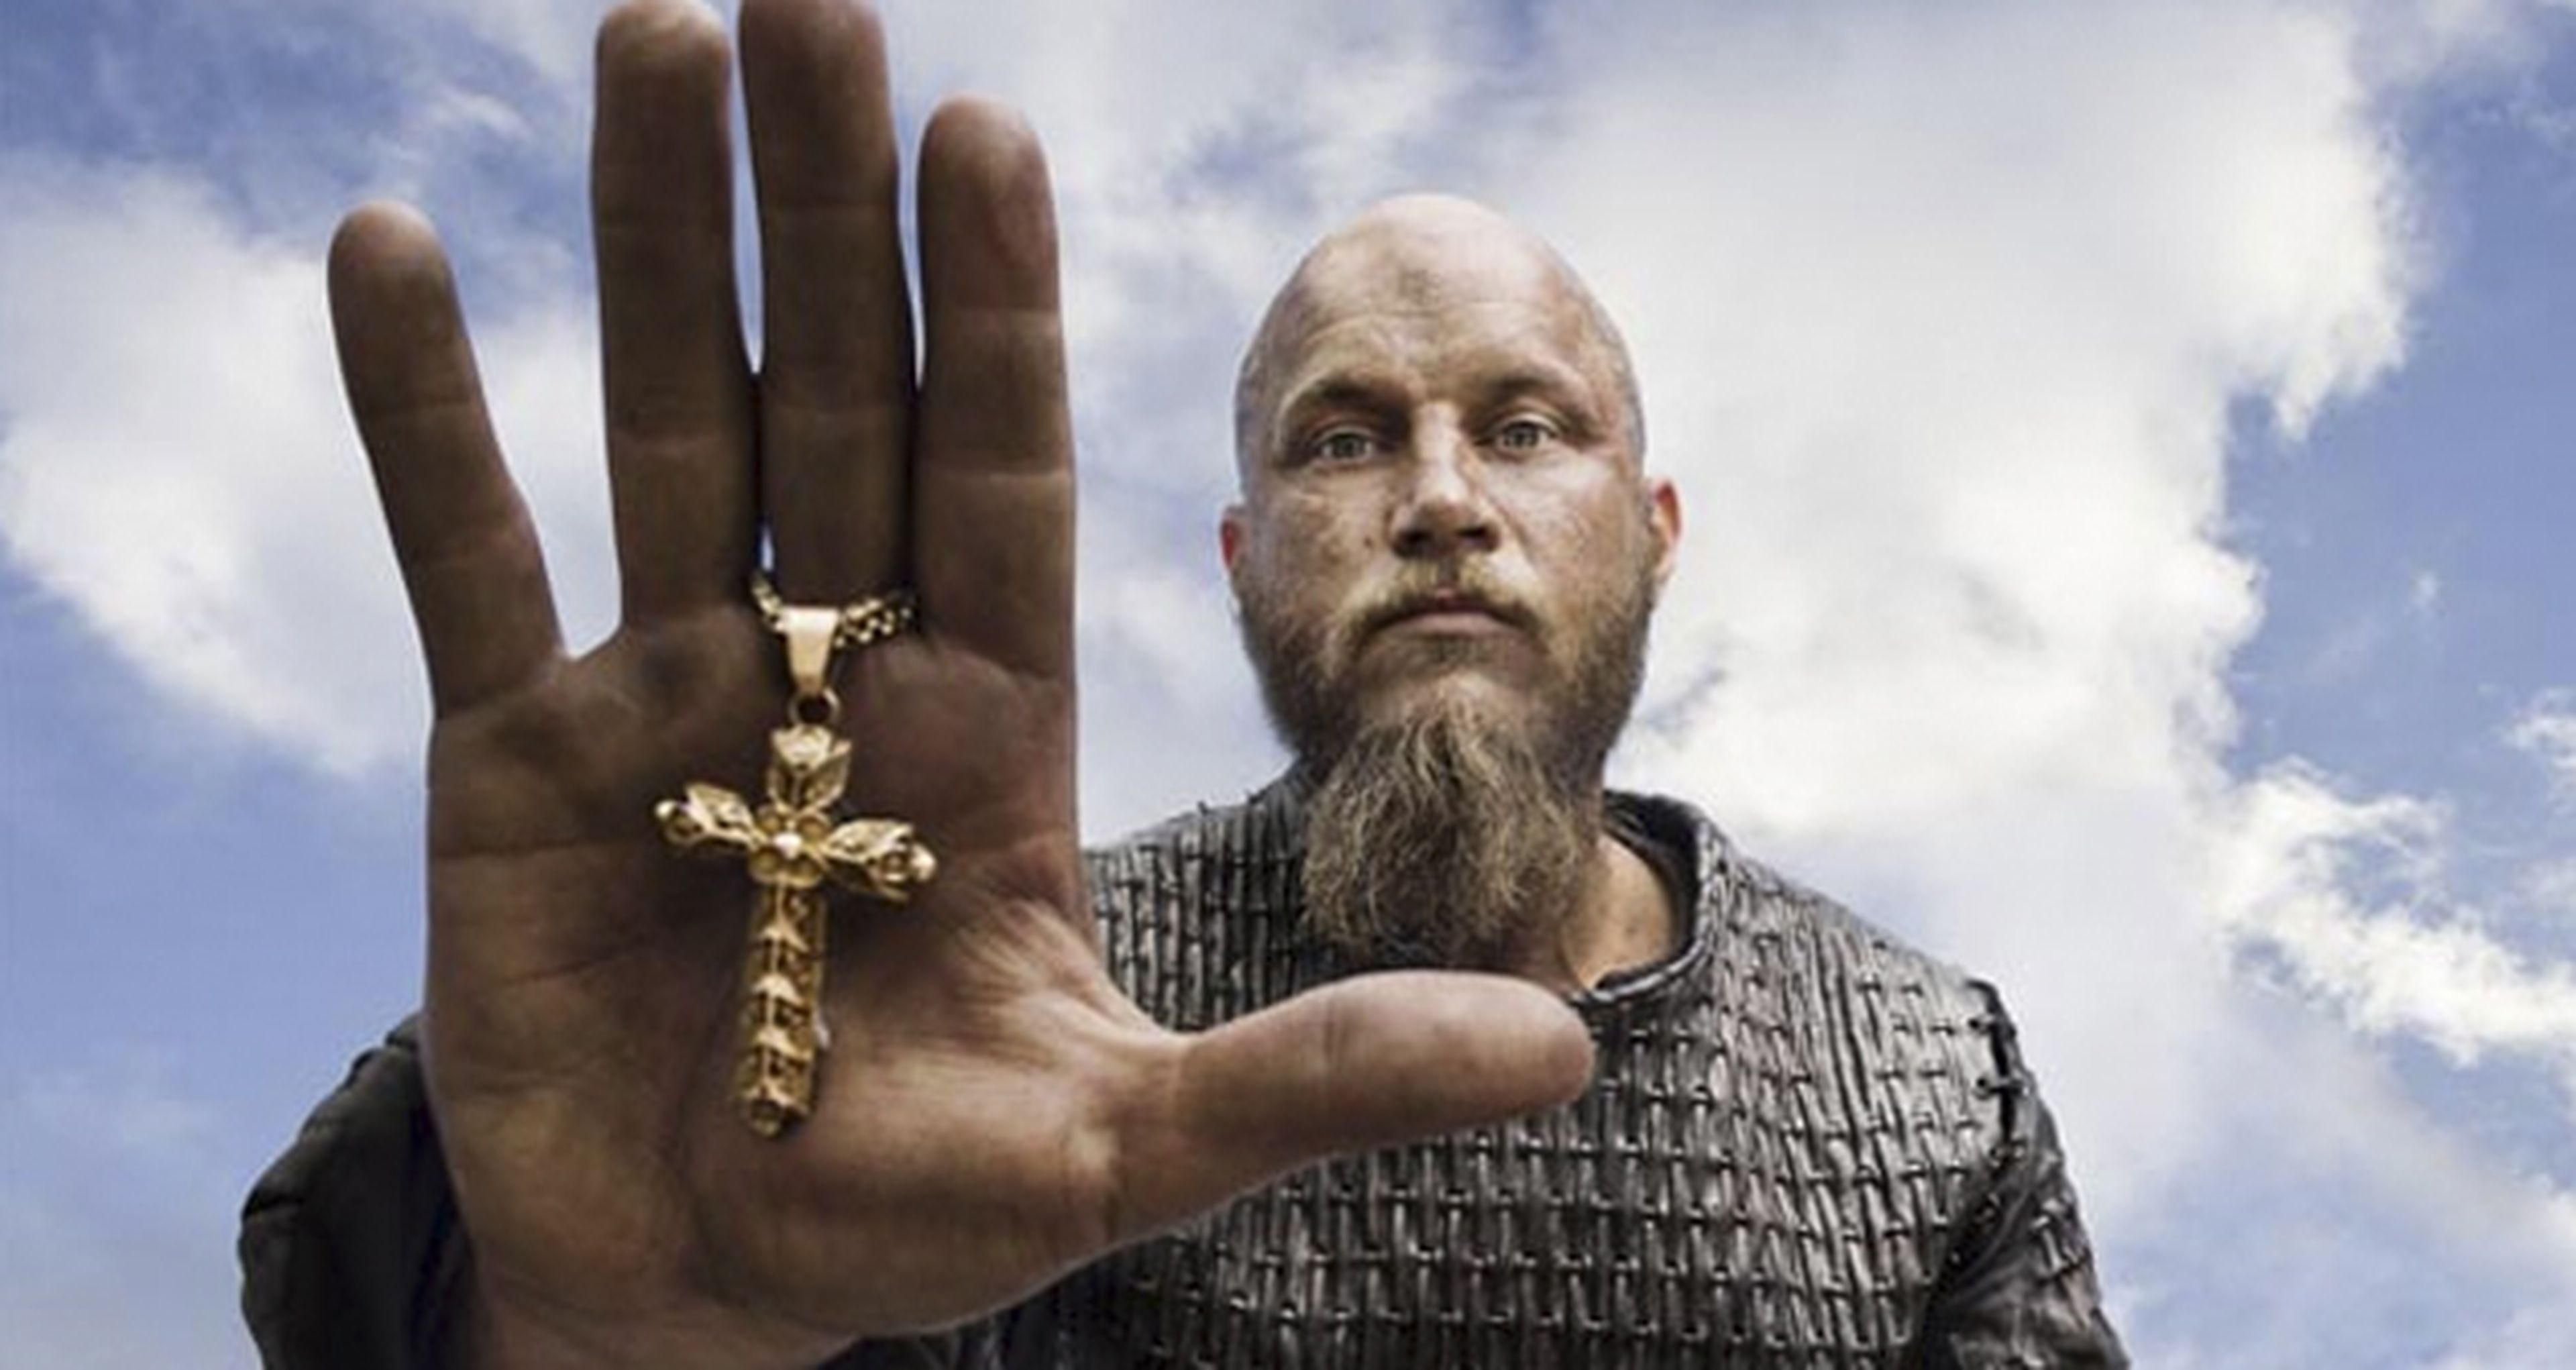 Juego de tronos - El creador de Vikings vuelve a cargar contra la serie por su violencia y sexo gratuito